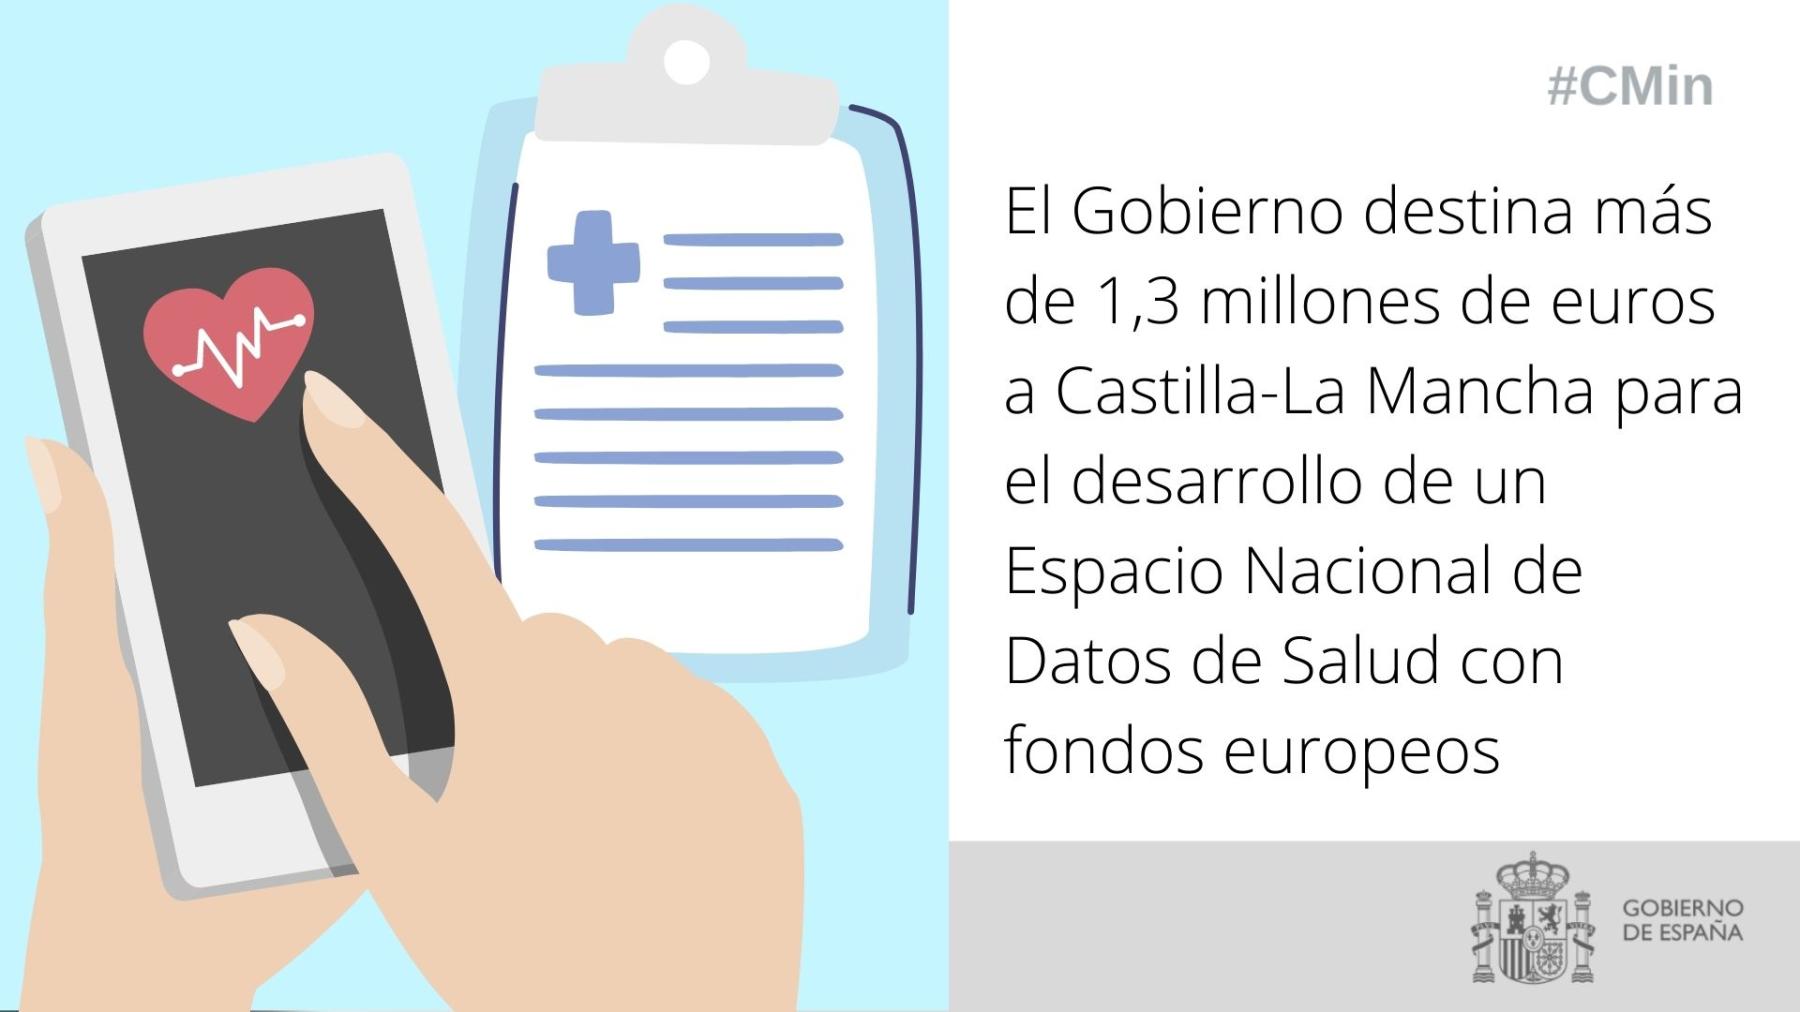 El Gobierno destina más de 1,3 millones de euros a Castilla-La Mancha para el desarrollo de un Espacio Nacional de Datos de Salud con fondos europeos